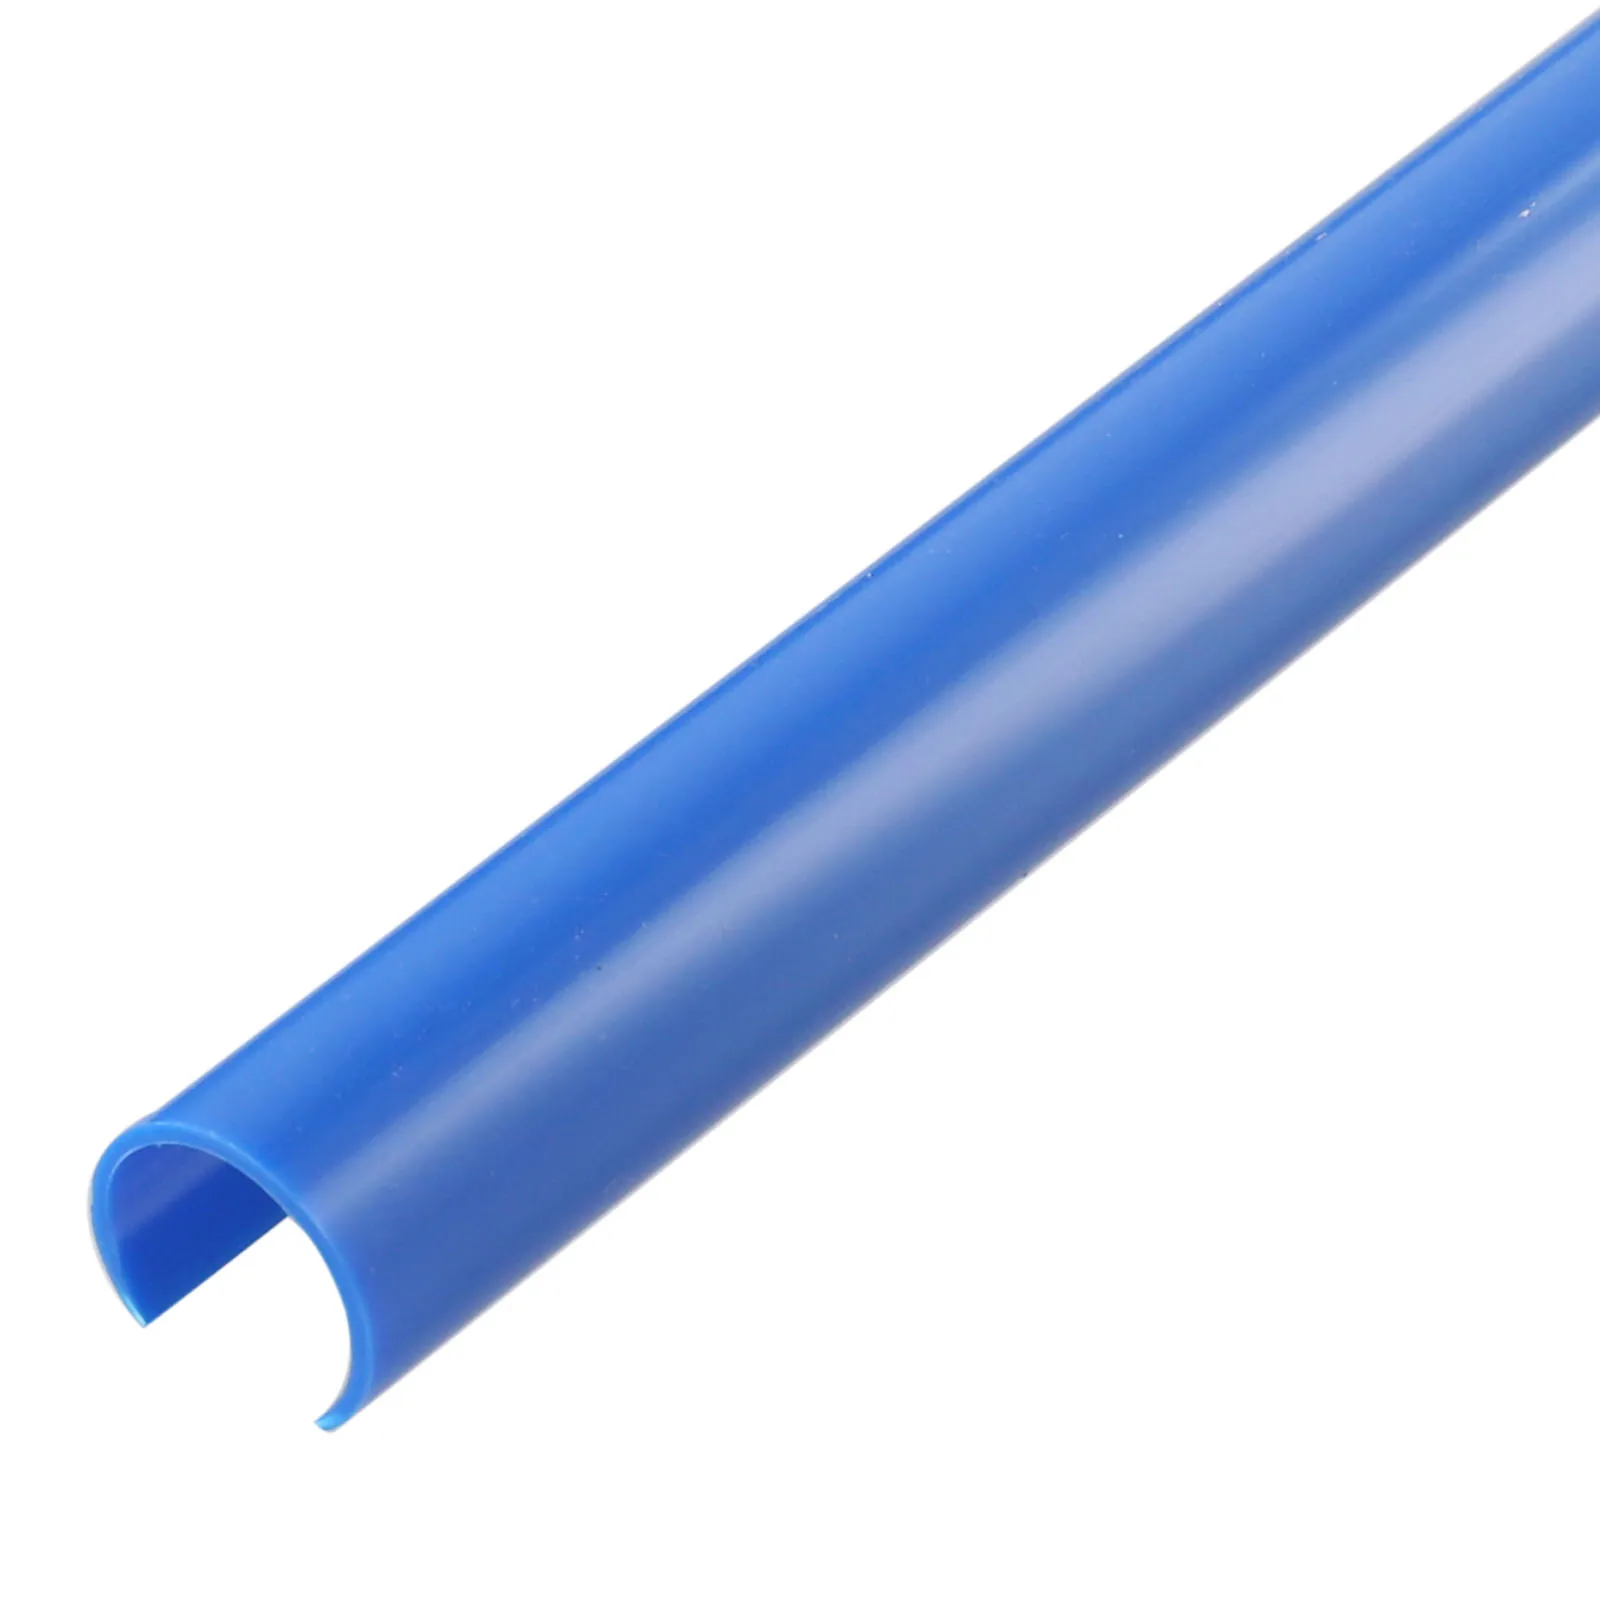 

Wrap Grille Trim Strips V Brace Bright Blue Car Decor For BMW E60 Grill Bar Plastic Convenient Durable Practical